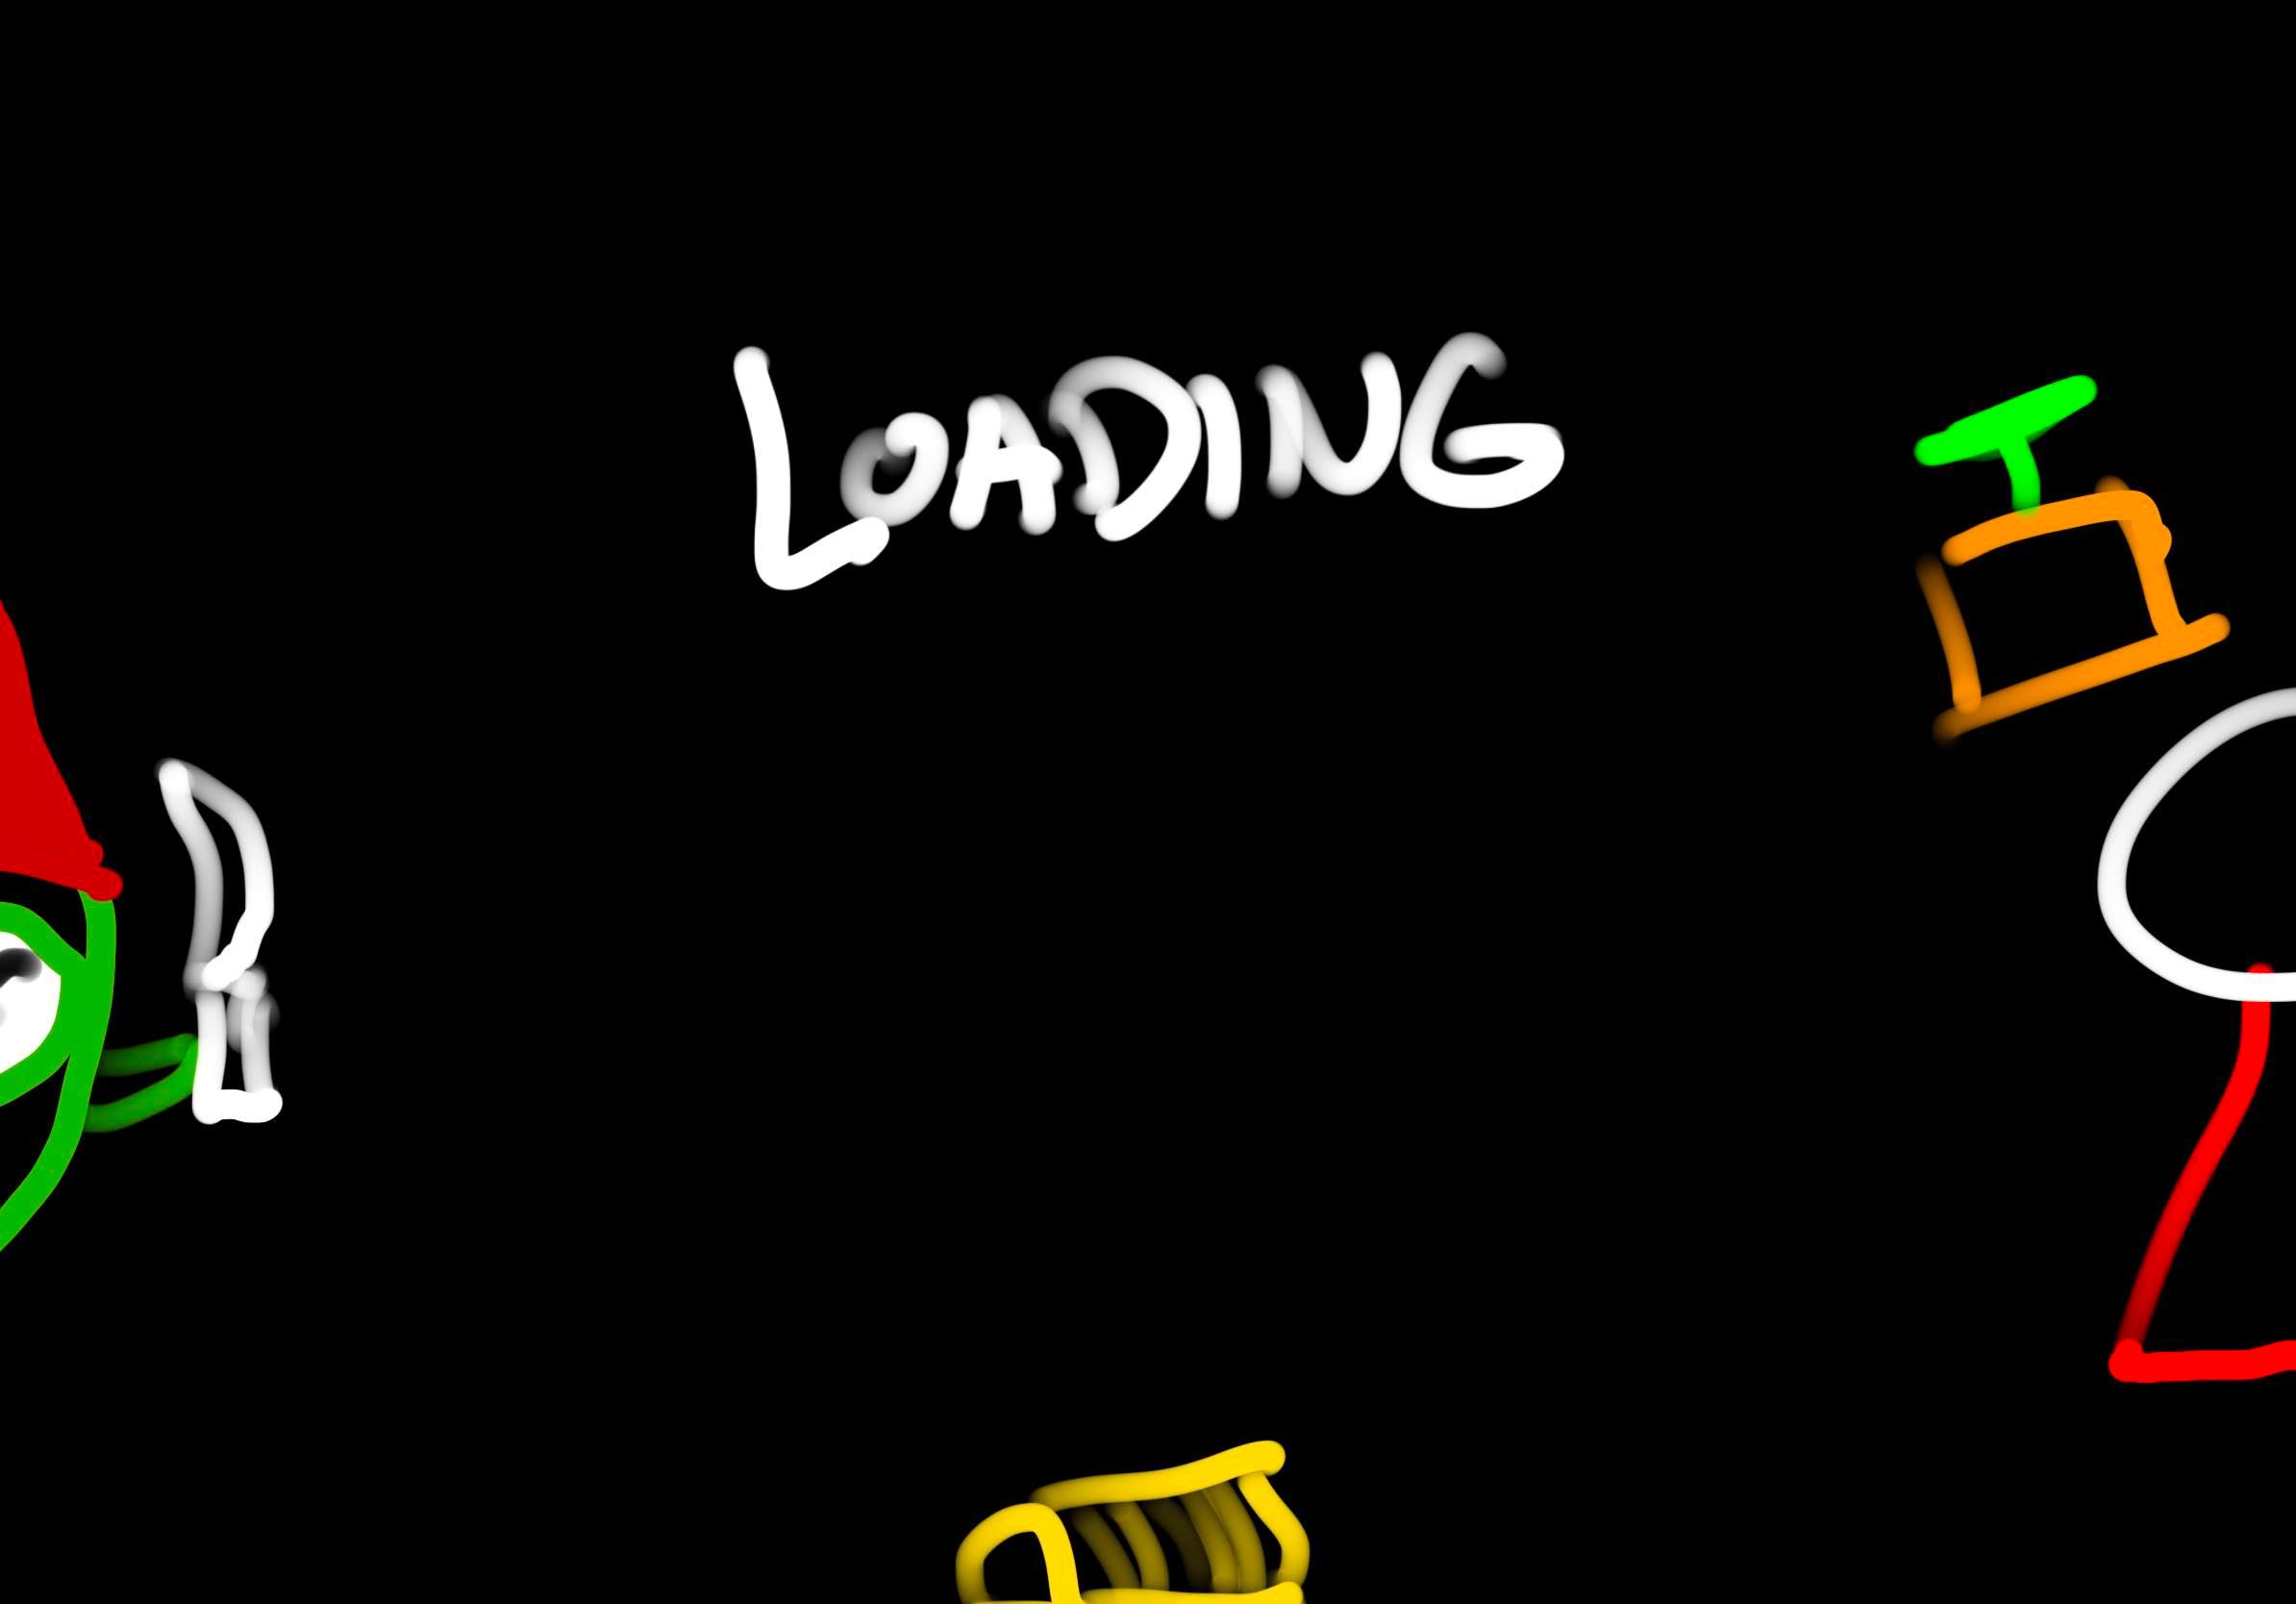 loading screen mock 2